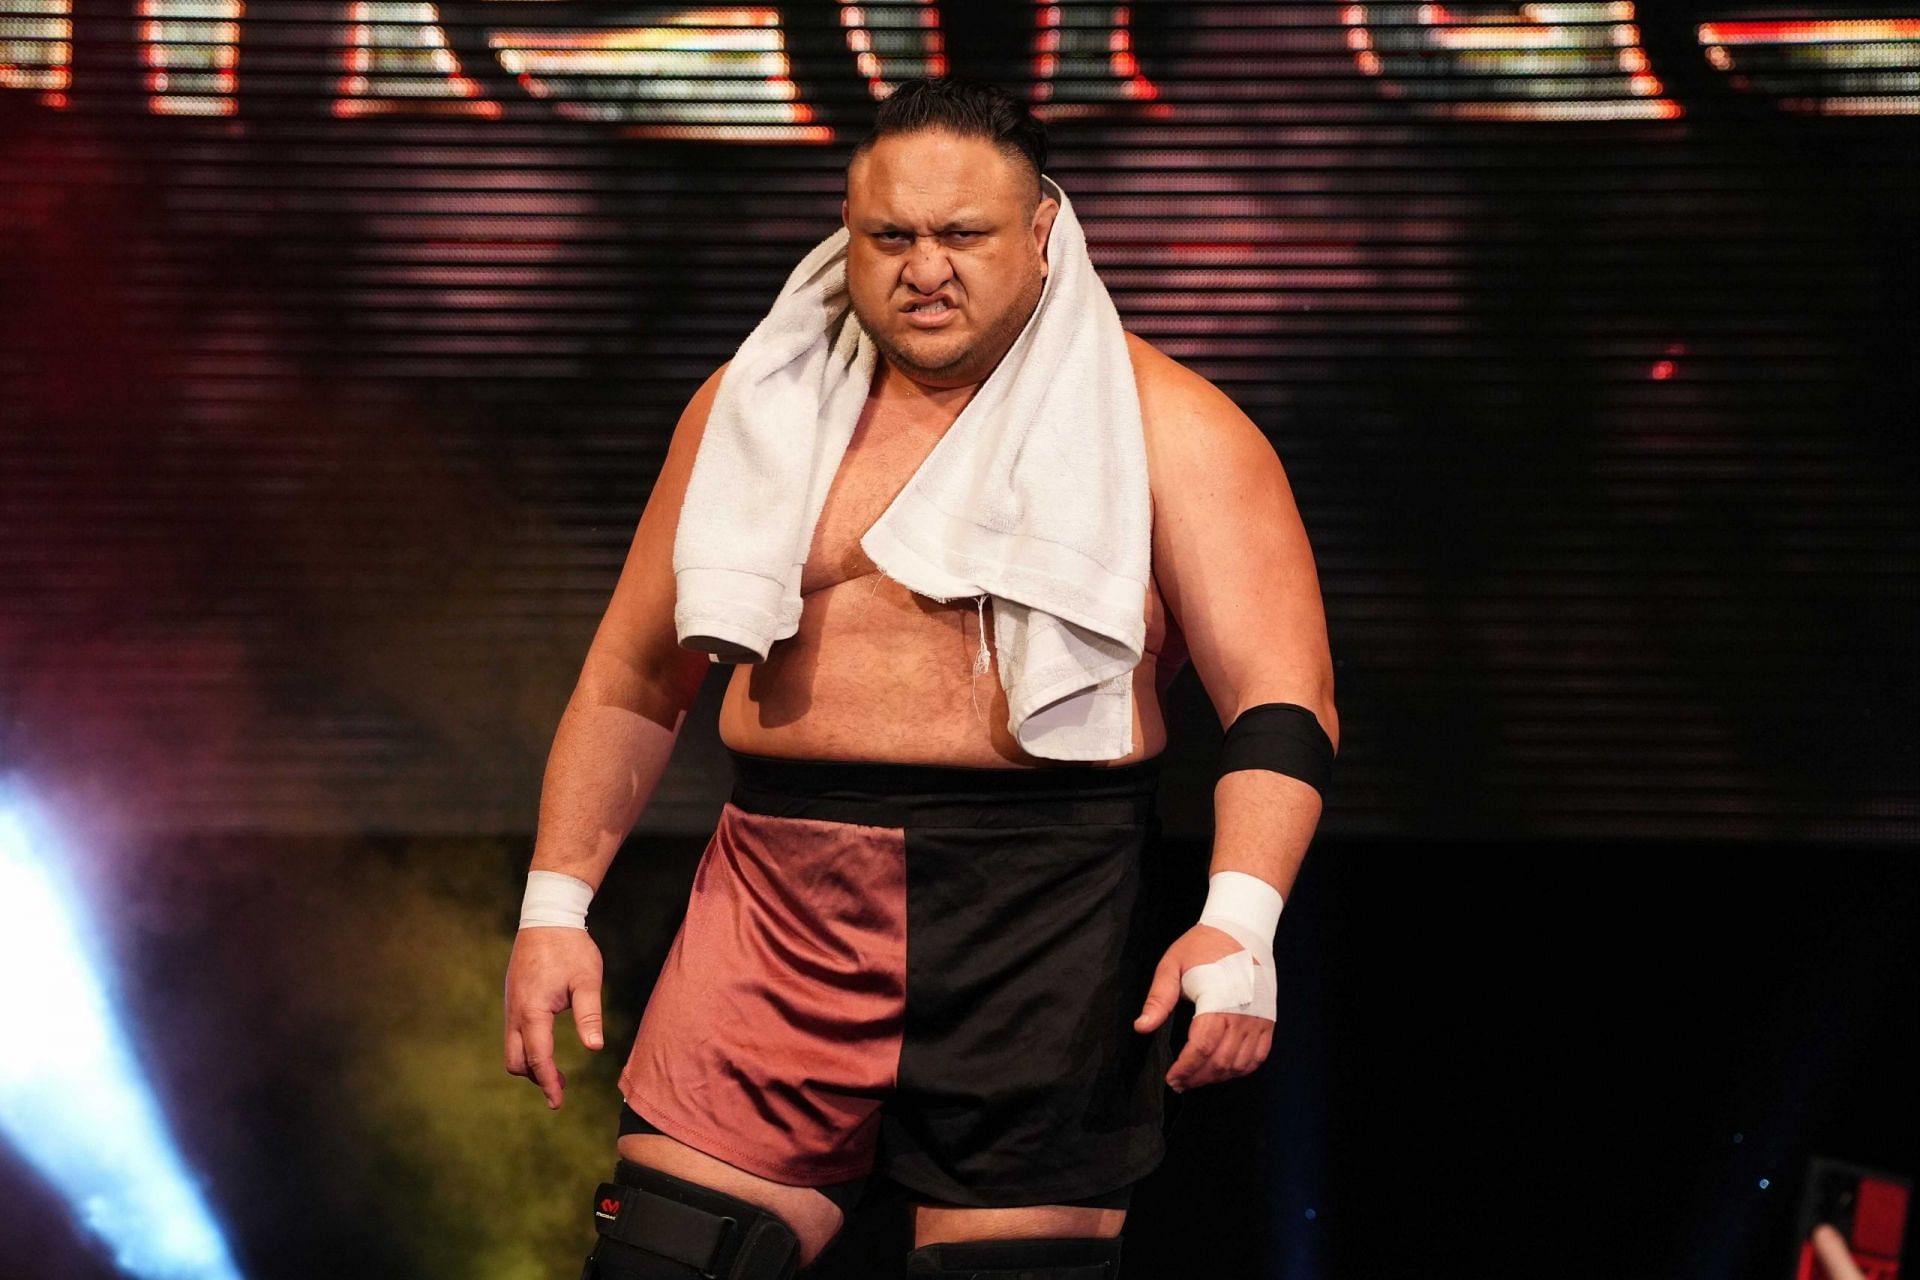 Samoa Joe appeared earlier at the AEW Battle of the Belts 2.